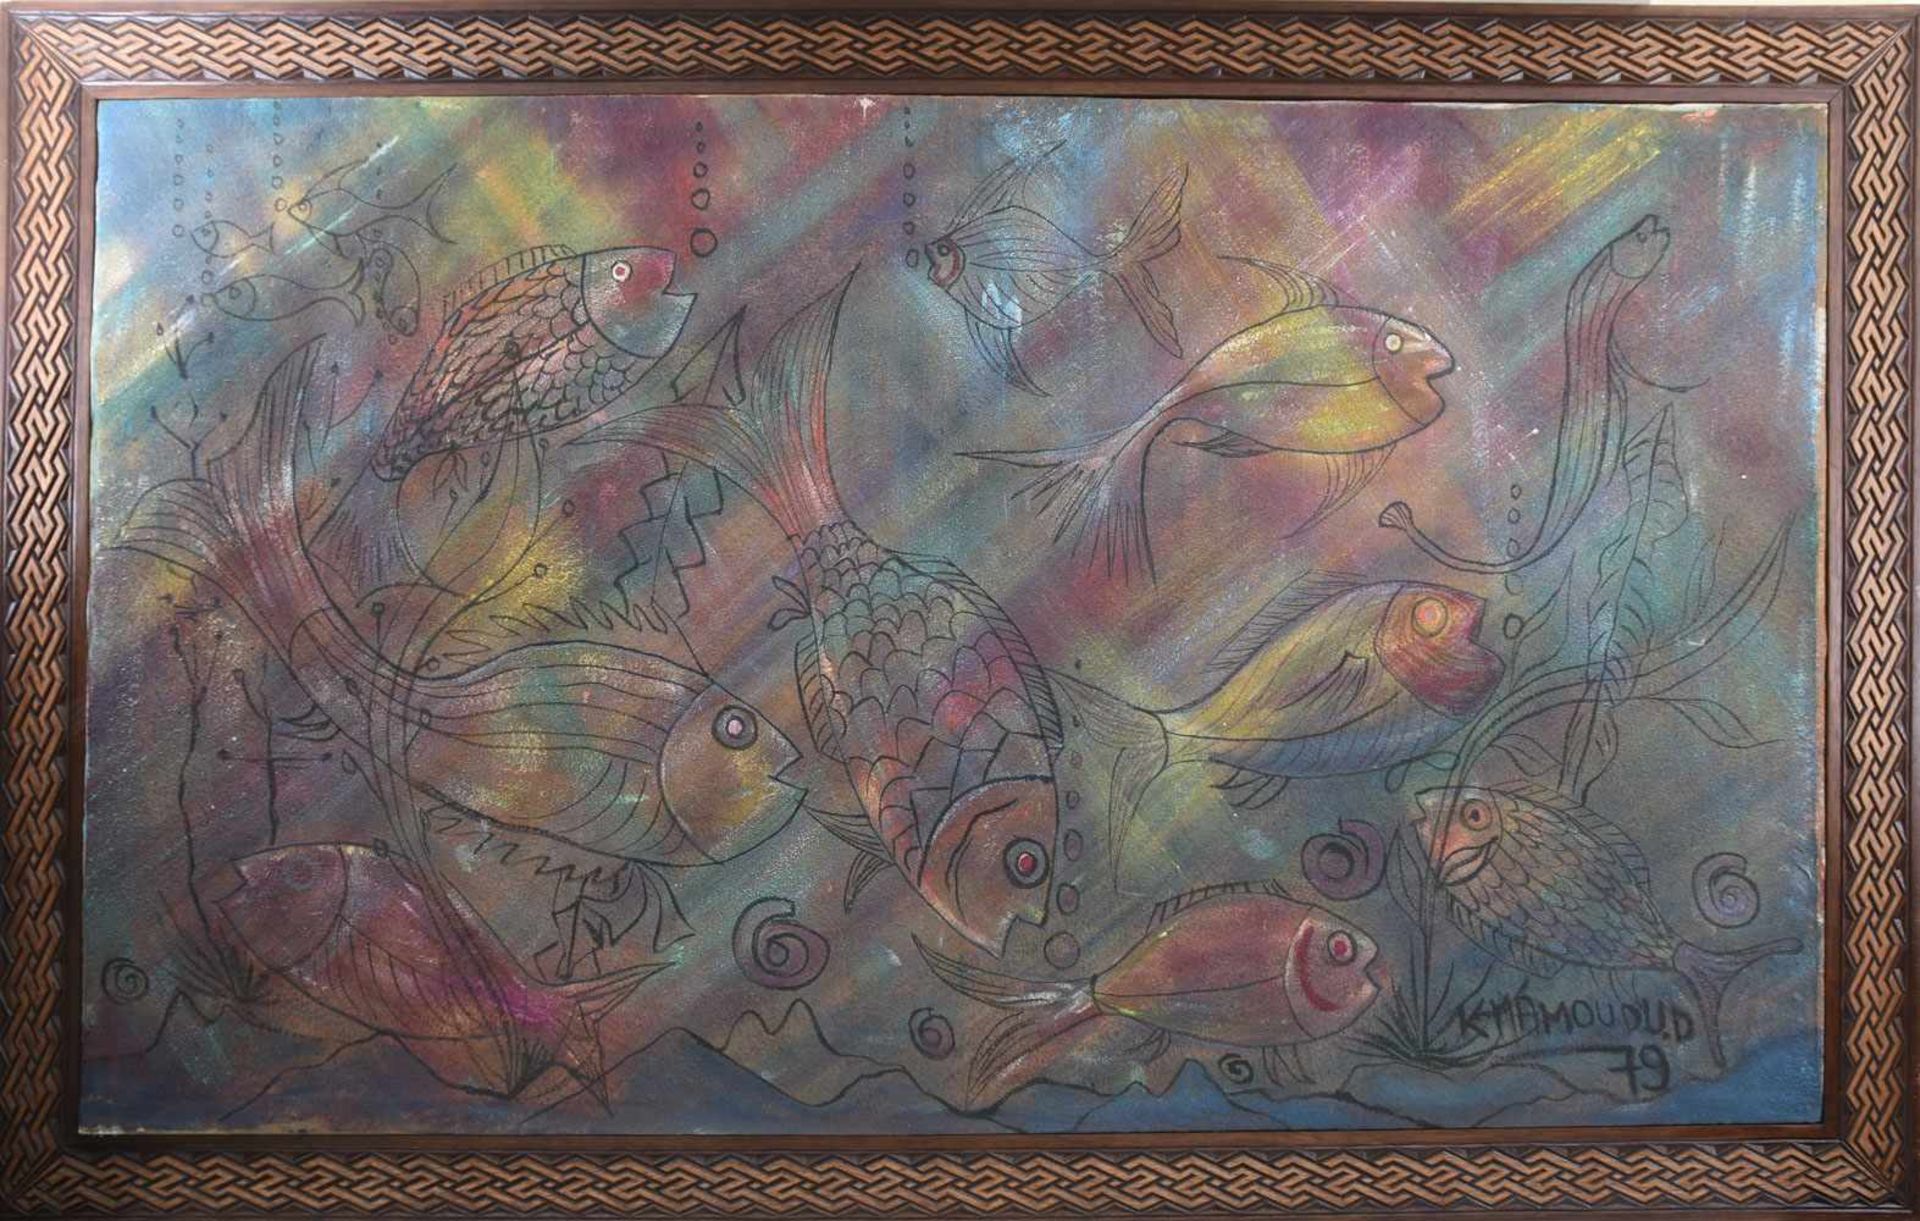 K.MAMOUDU. "Aquarium", Acryl/Mischtechnik auf Leinwand, gerahmt, signiert und datiert. Rechts